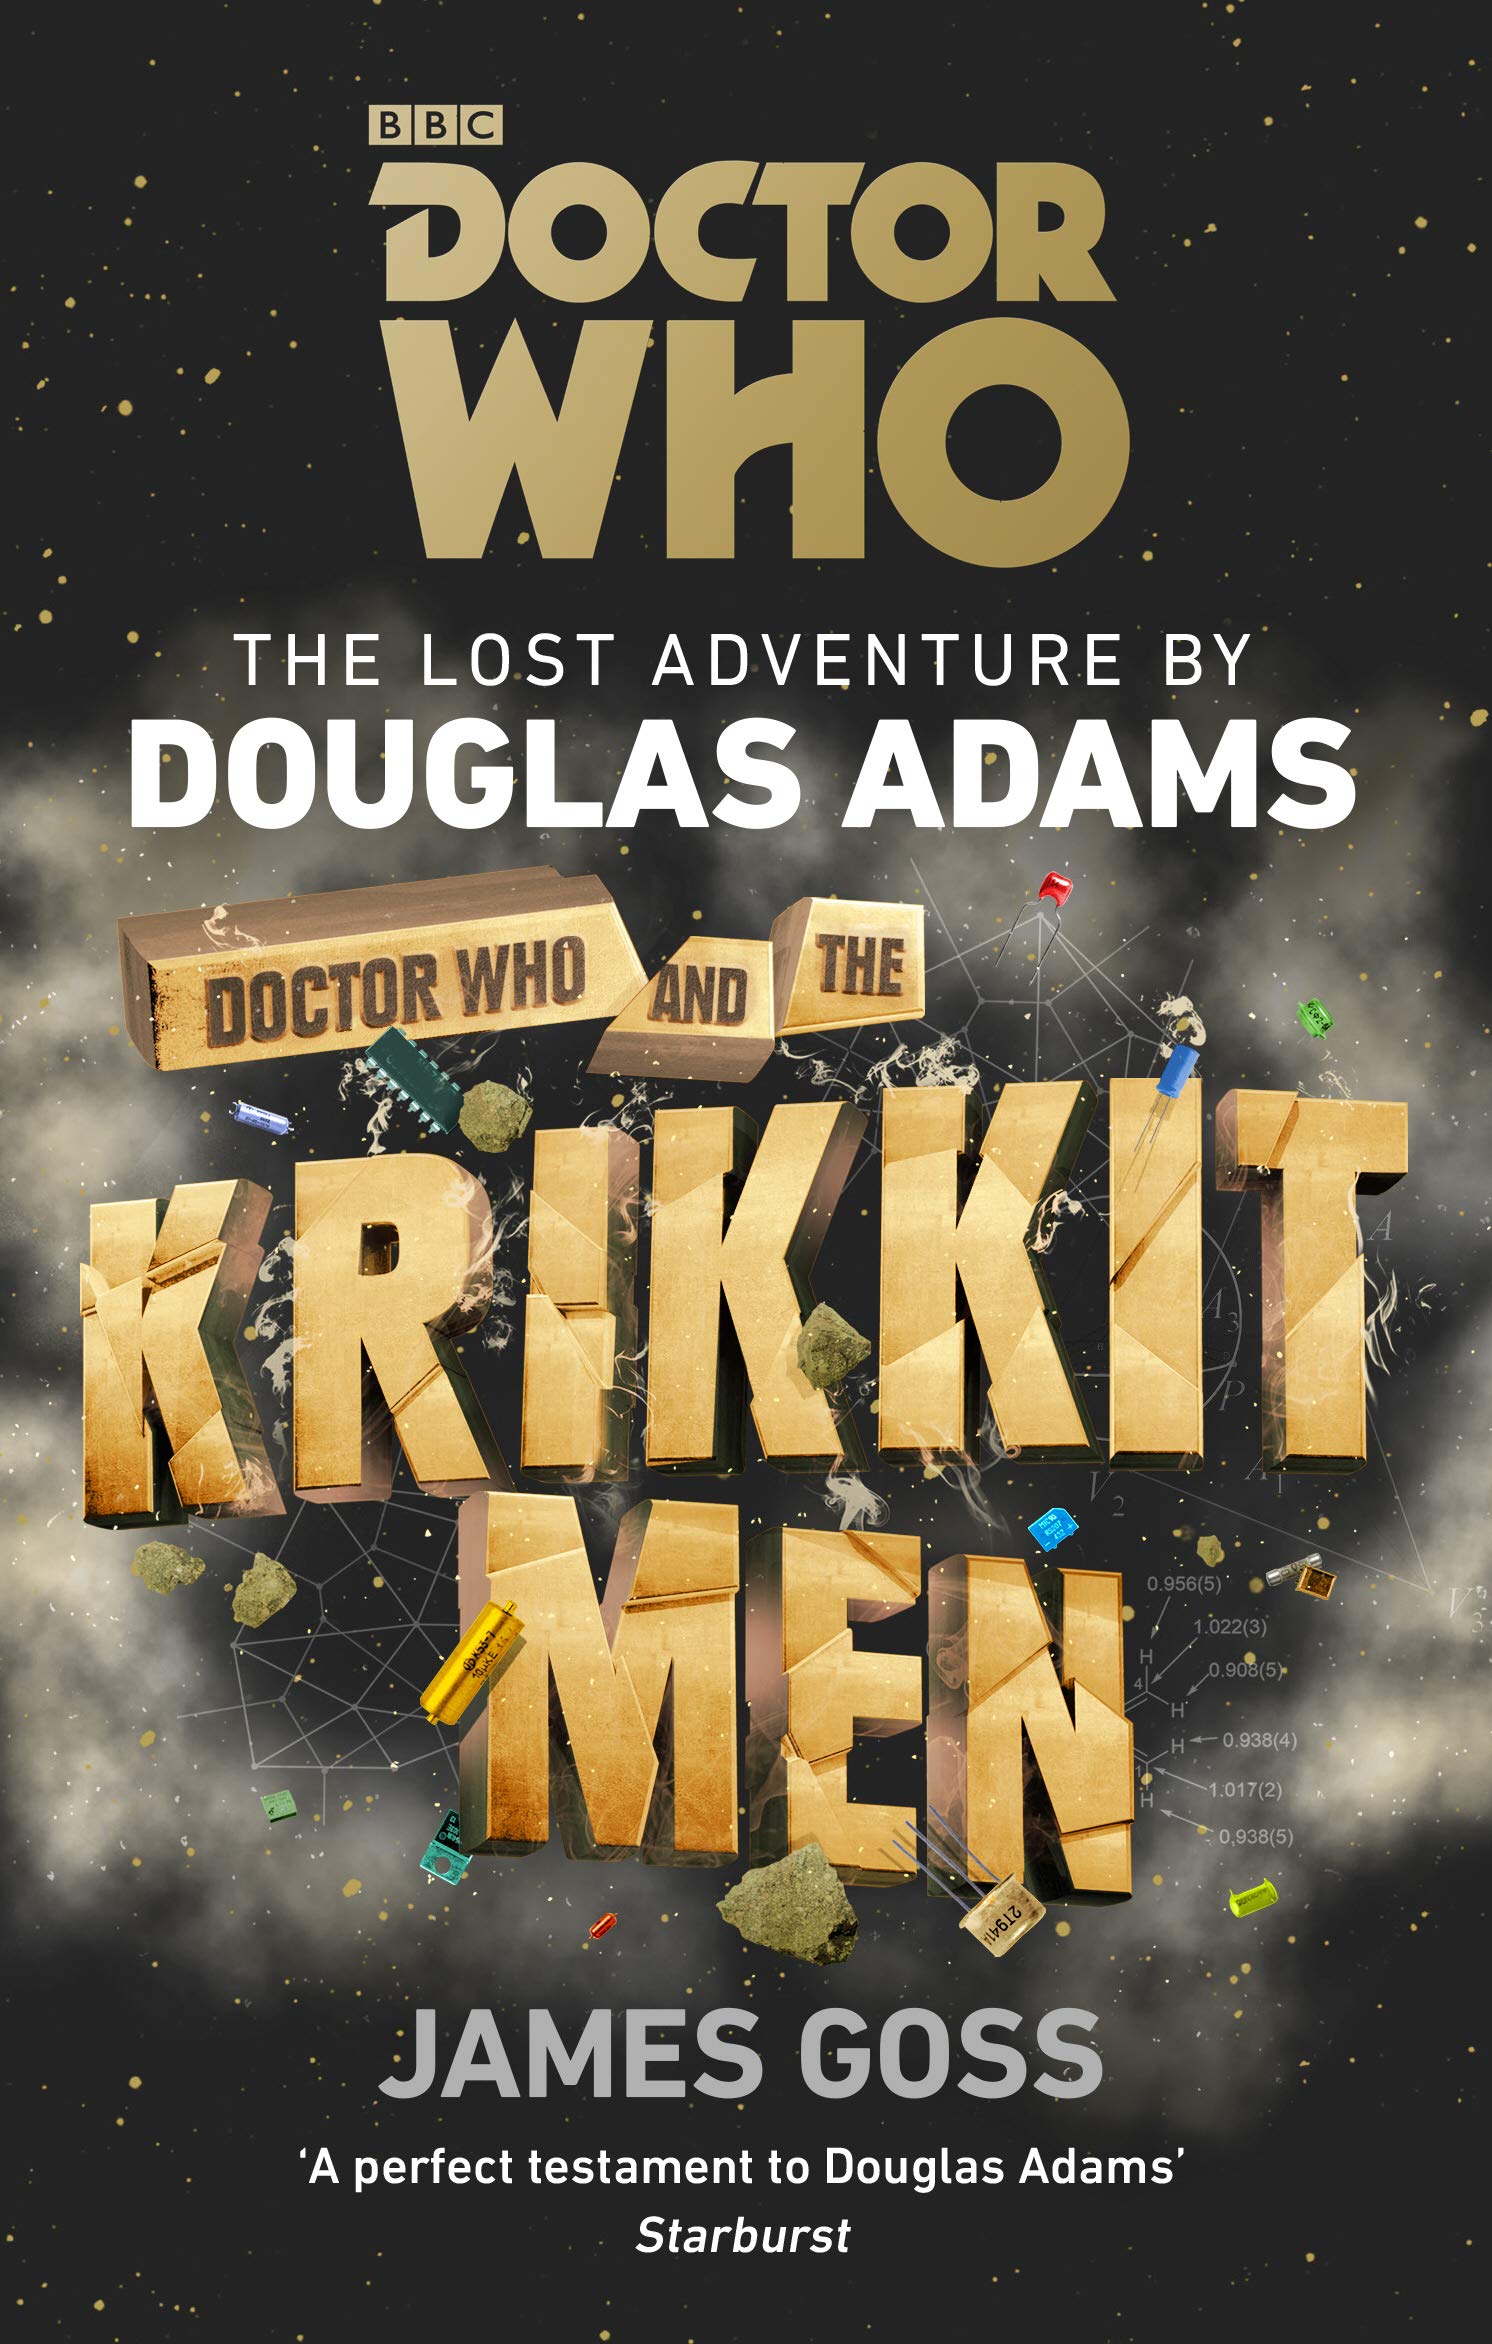 Douglas Adams, James Goss: Doctor Who and the Krikkitmen (2019, Penguin Group UK)